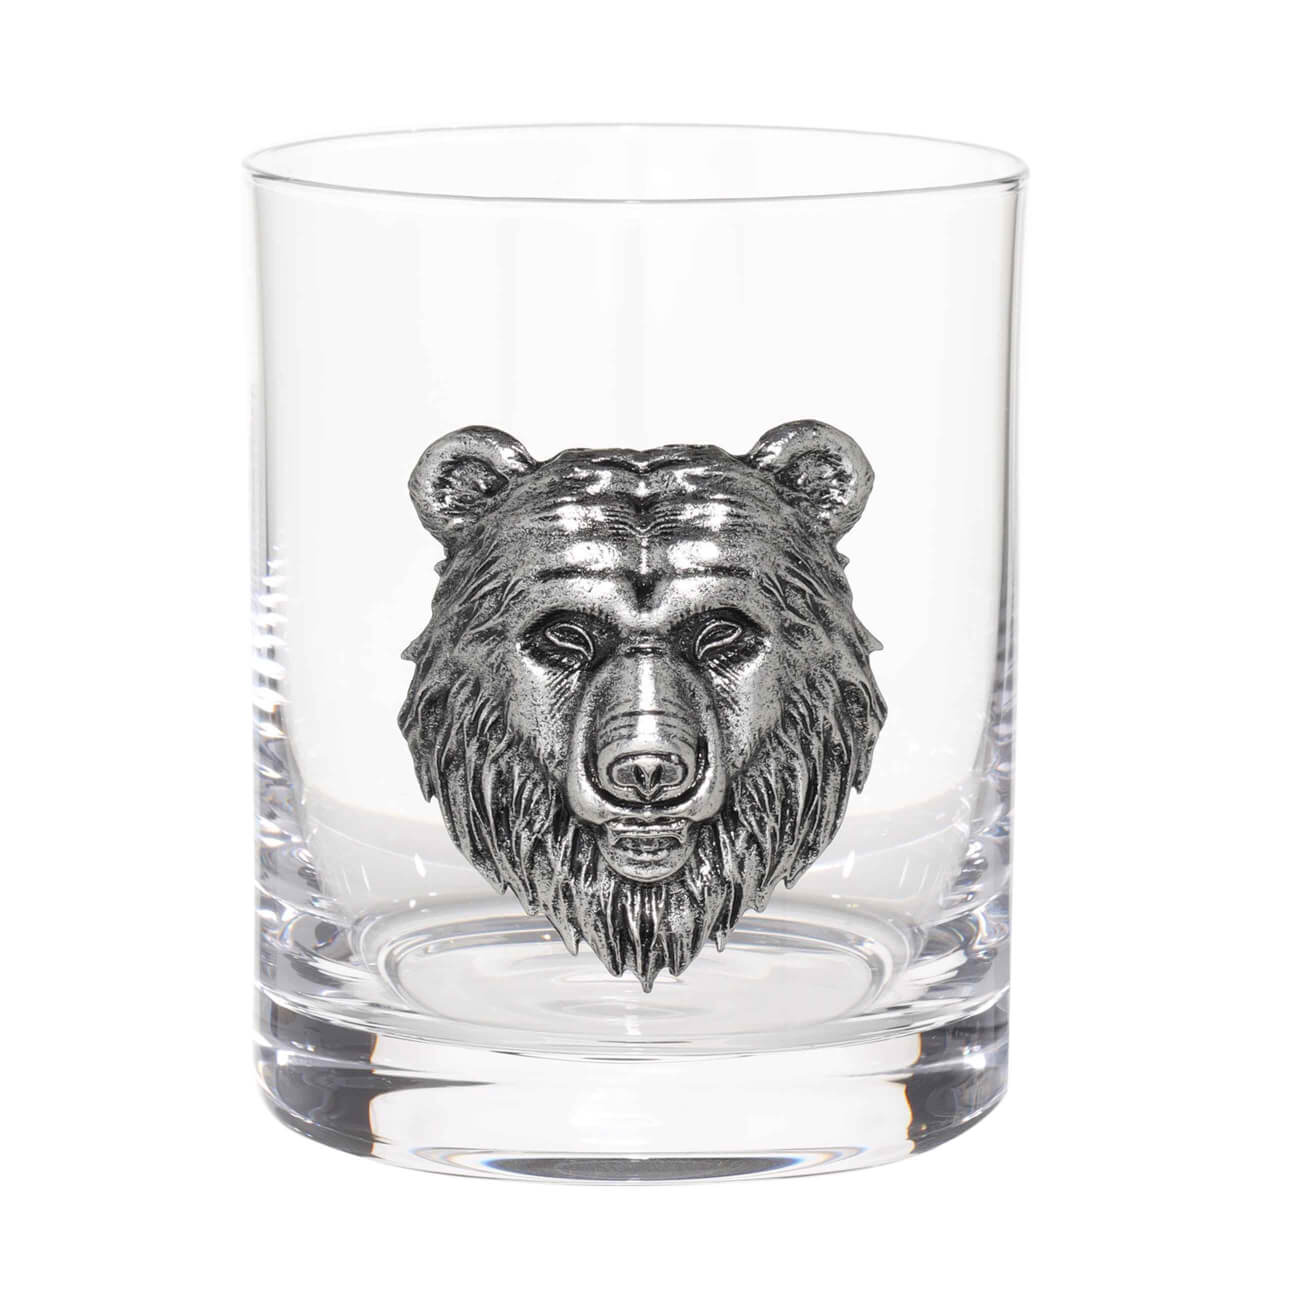 Стакан для виски, 340 мл, стекло/металл, серебристый, Медведь, Lux elements iq блокнот найди и покажи маша и медведь 20 стр